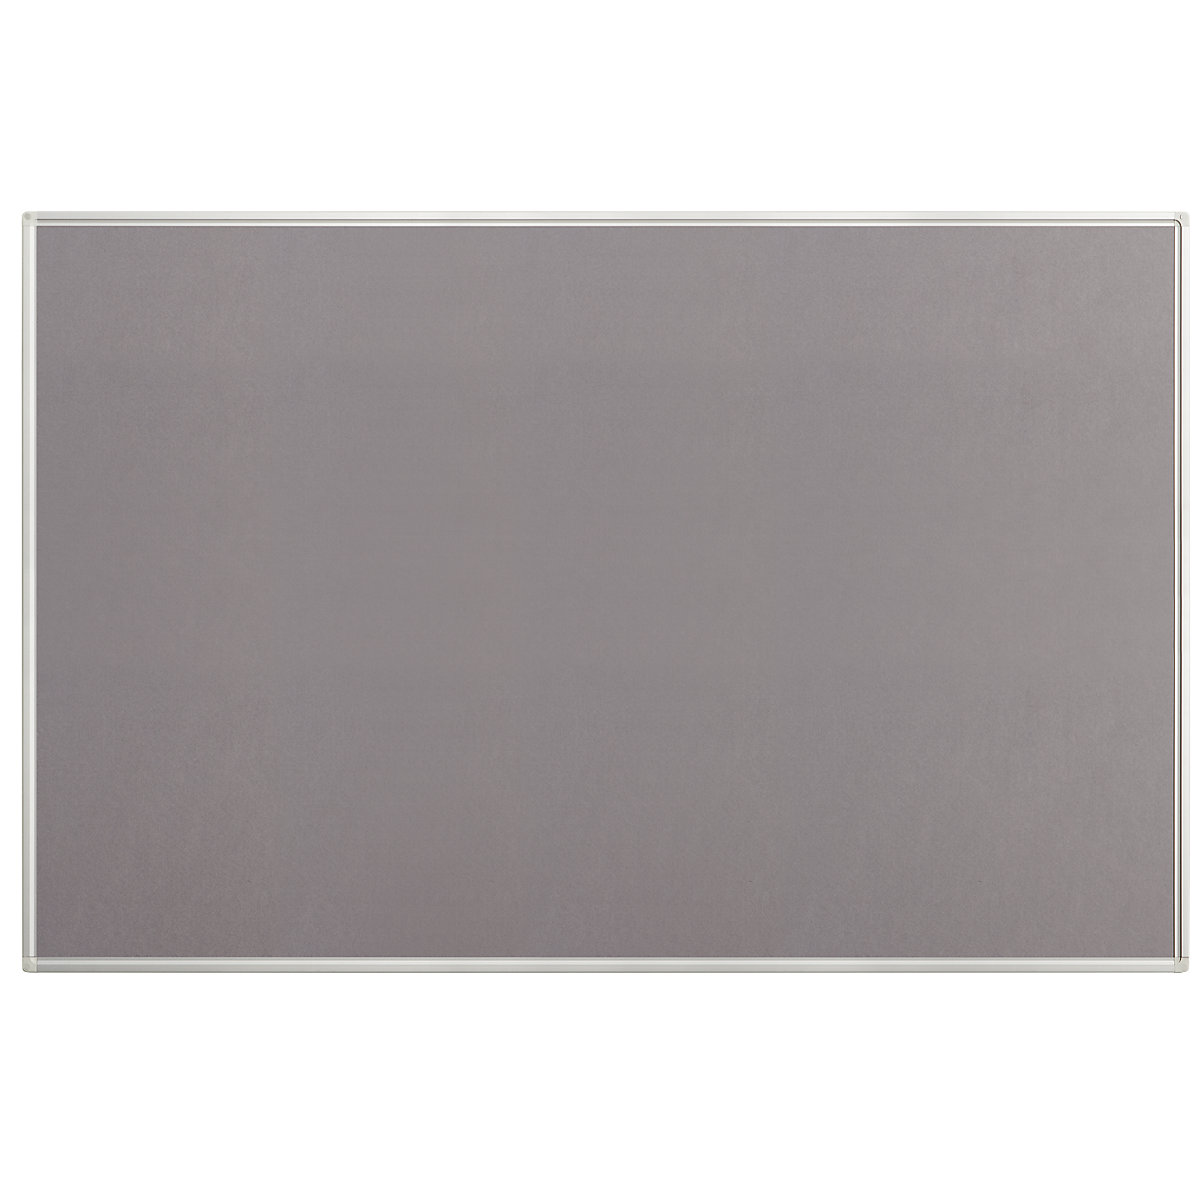 Lavagna per spilli, feltro, grigio, largh. x alt. 1500 x 1000 mm-3